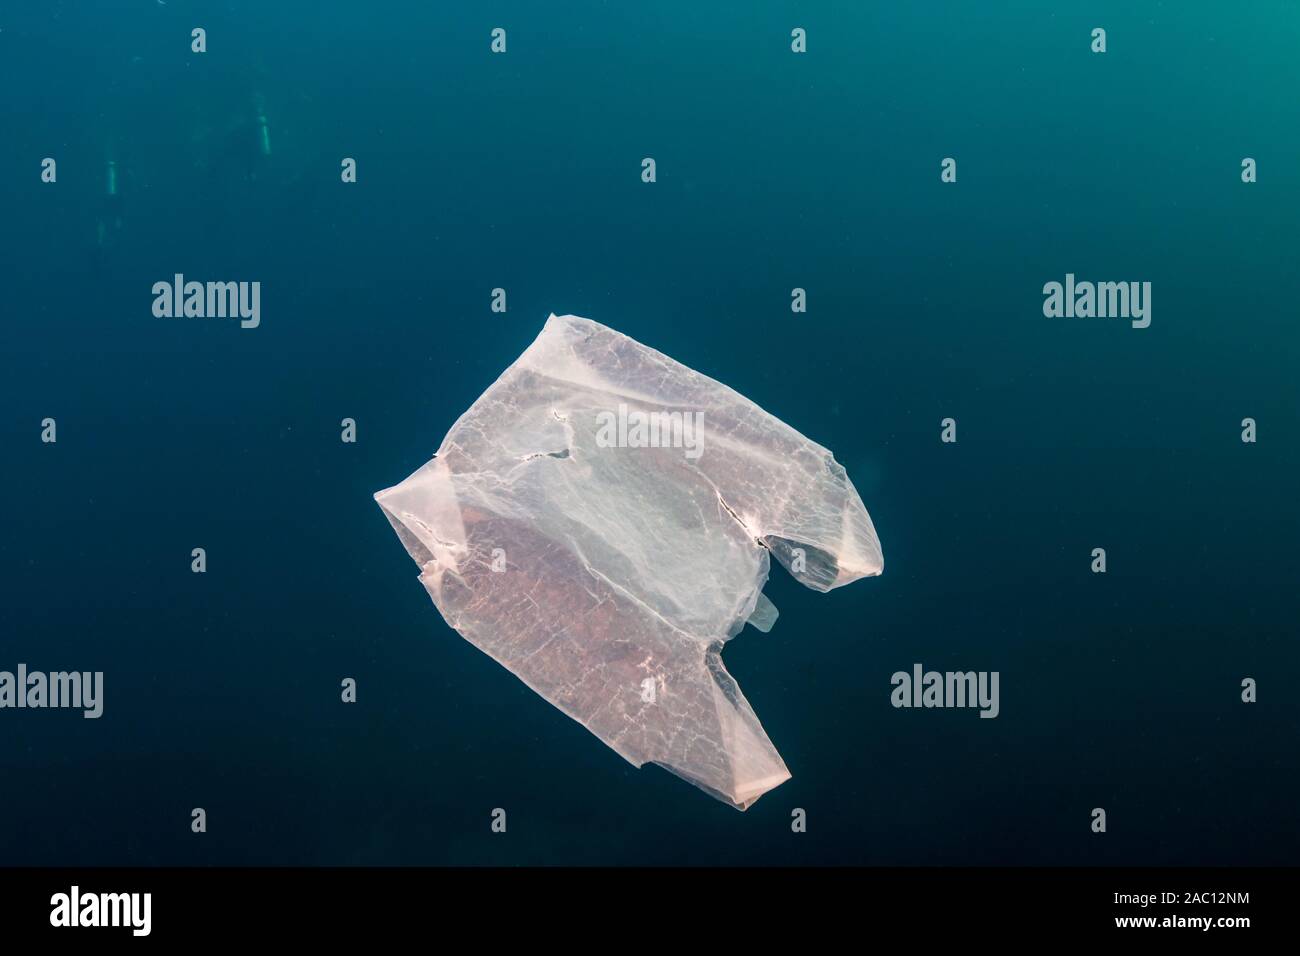 La pollution plastique dans l'Océan - un sac en plastique sous la dérive dans un océan tropical Banque D'Images